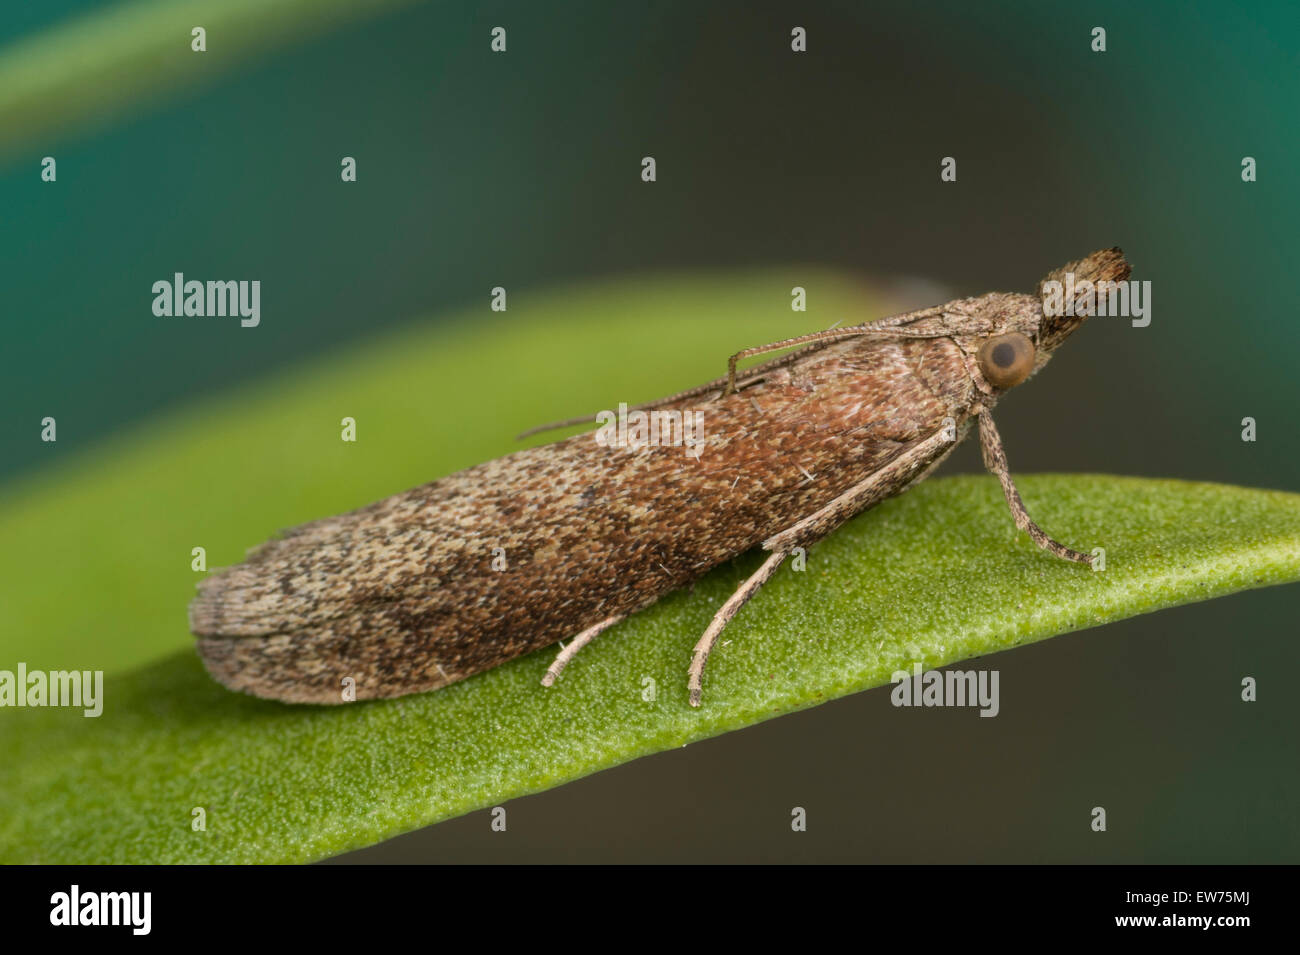 https://c8.alamy.com/comp/EW75MJ/webbing-moth-EW75MJ.jpg